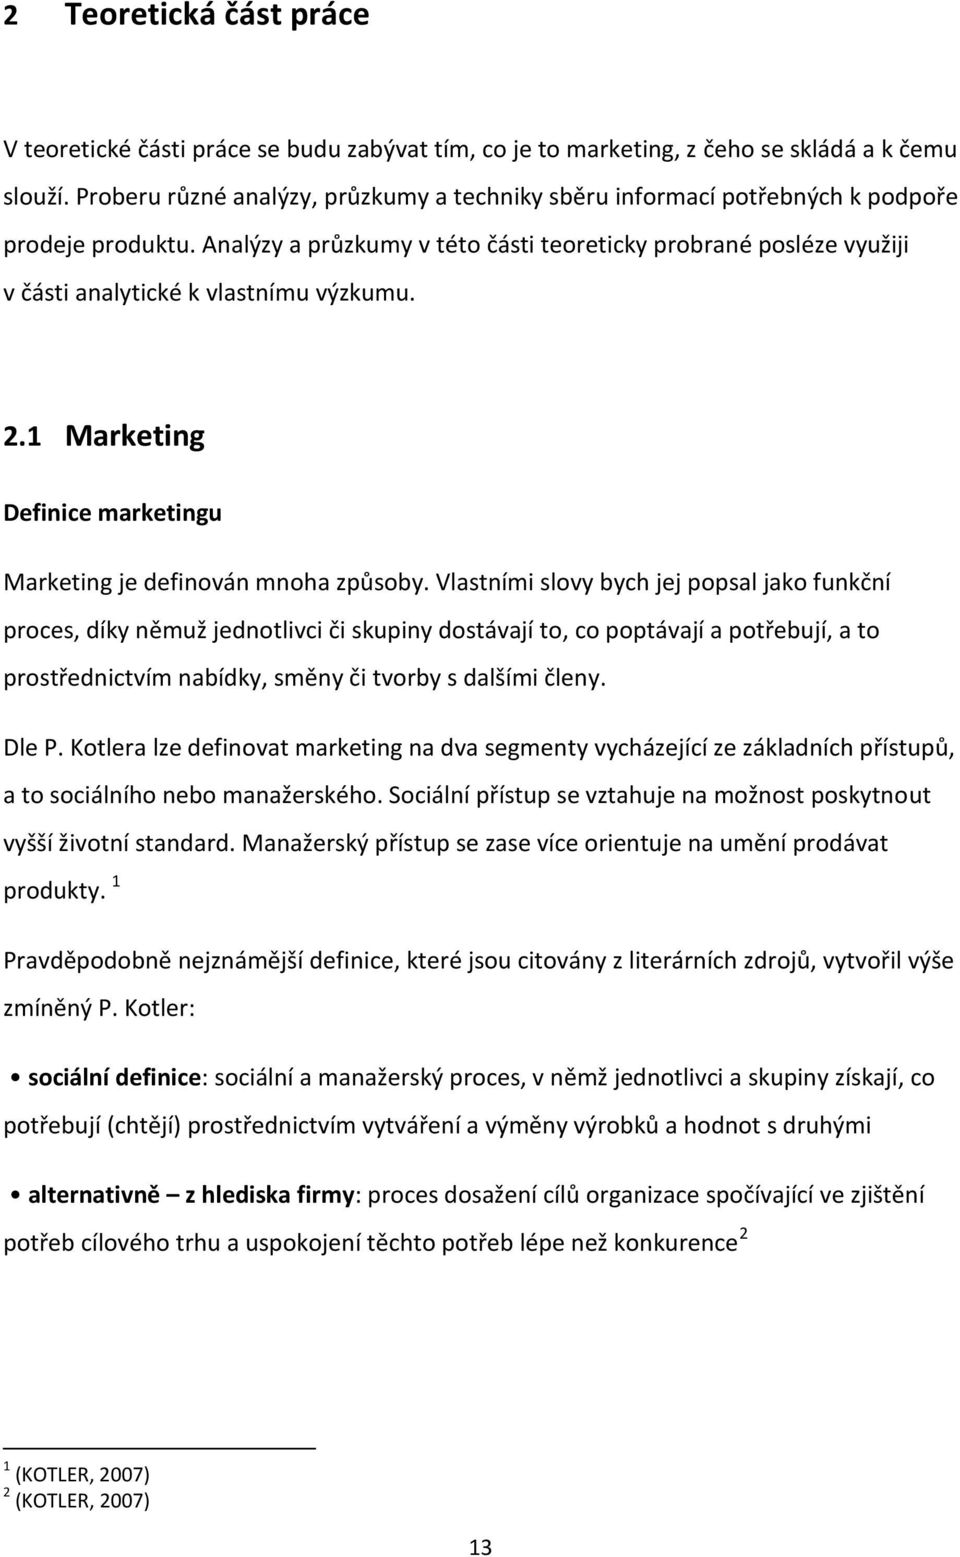 Analýzy a průzkumy v této části teoreticky probrané posléze využiji v části analytické k vlastnímu výzkumu. 2.1 Marketing Definice marketingu Marketing je definován mnoha způsoby.